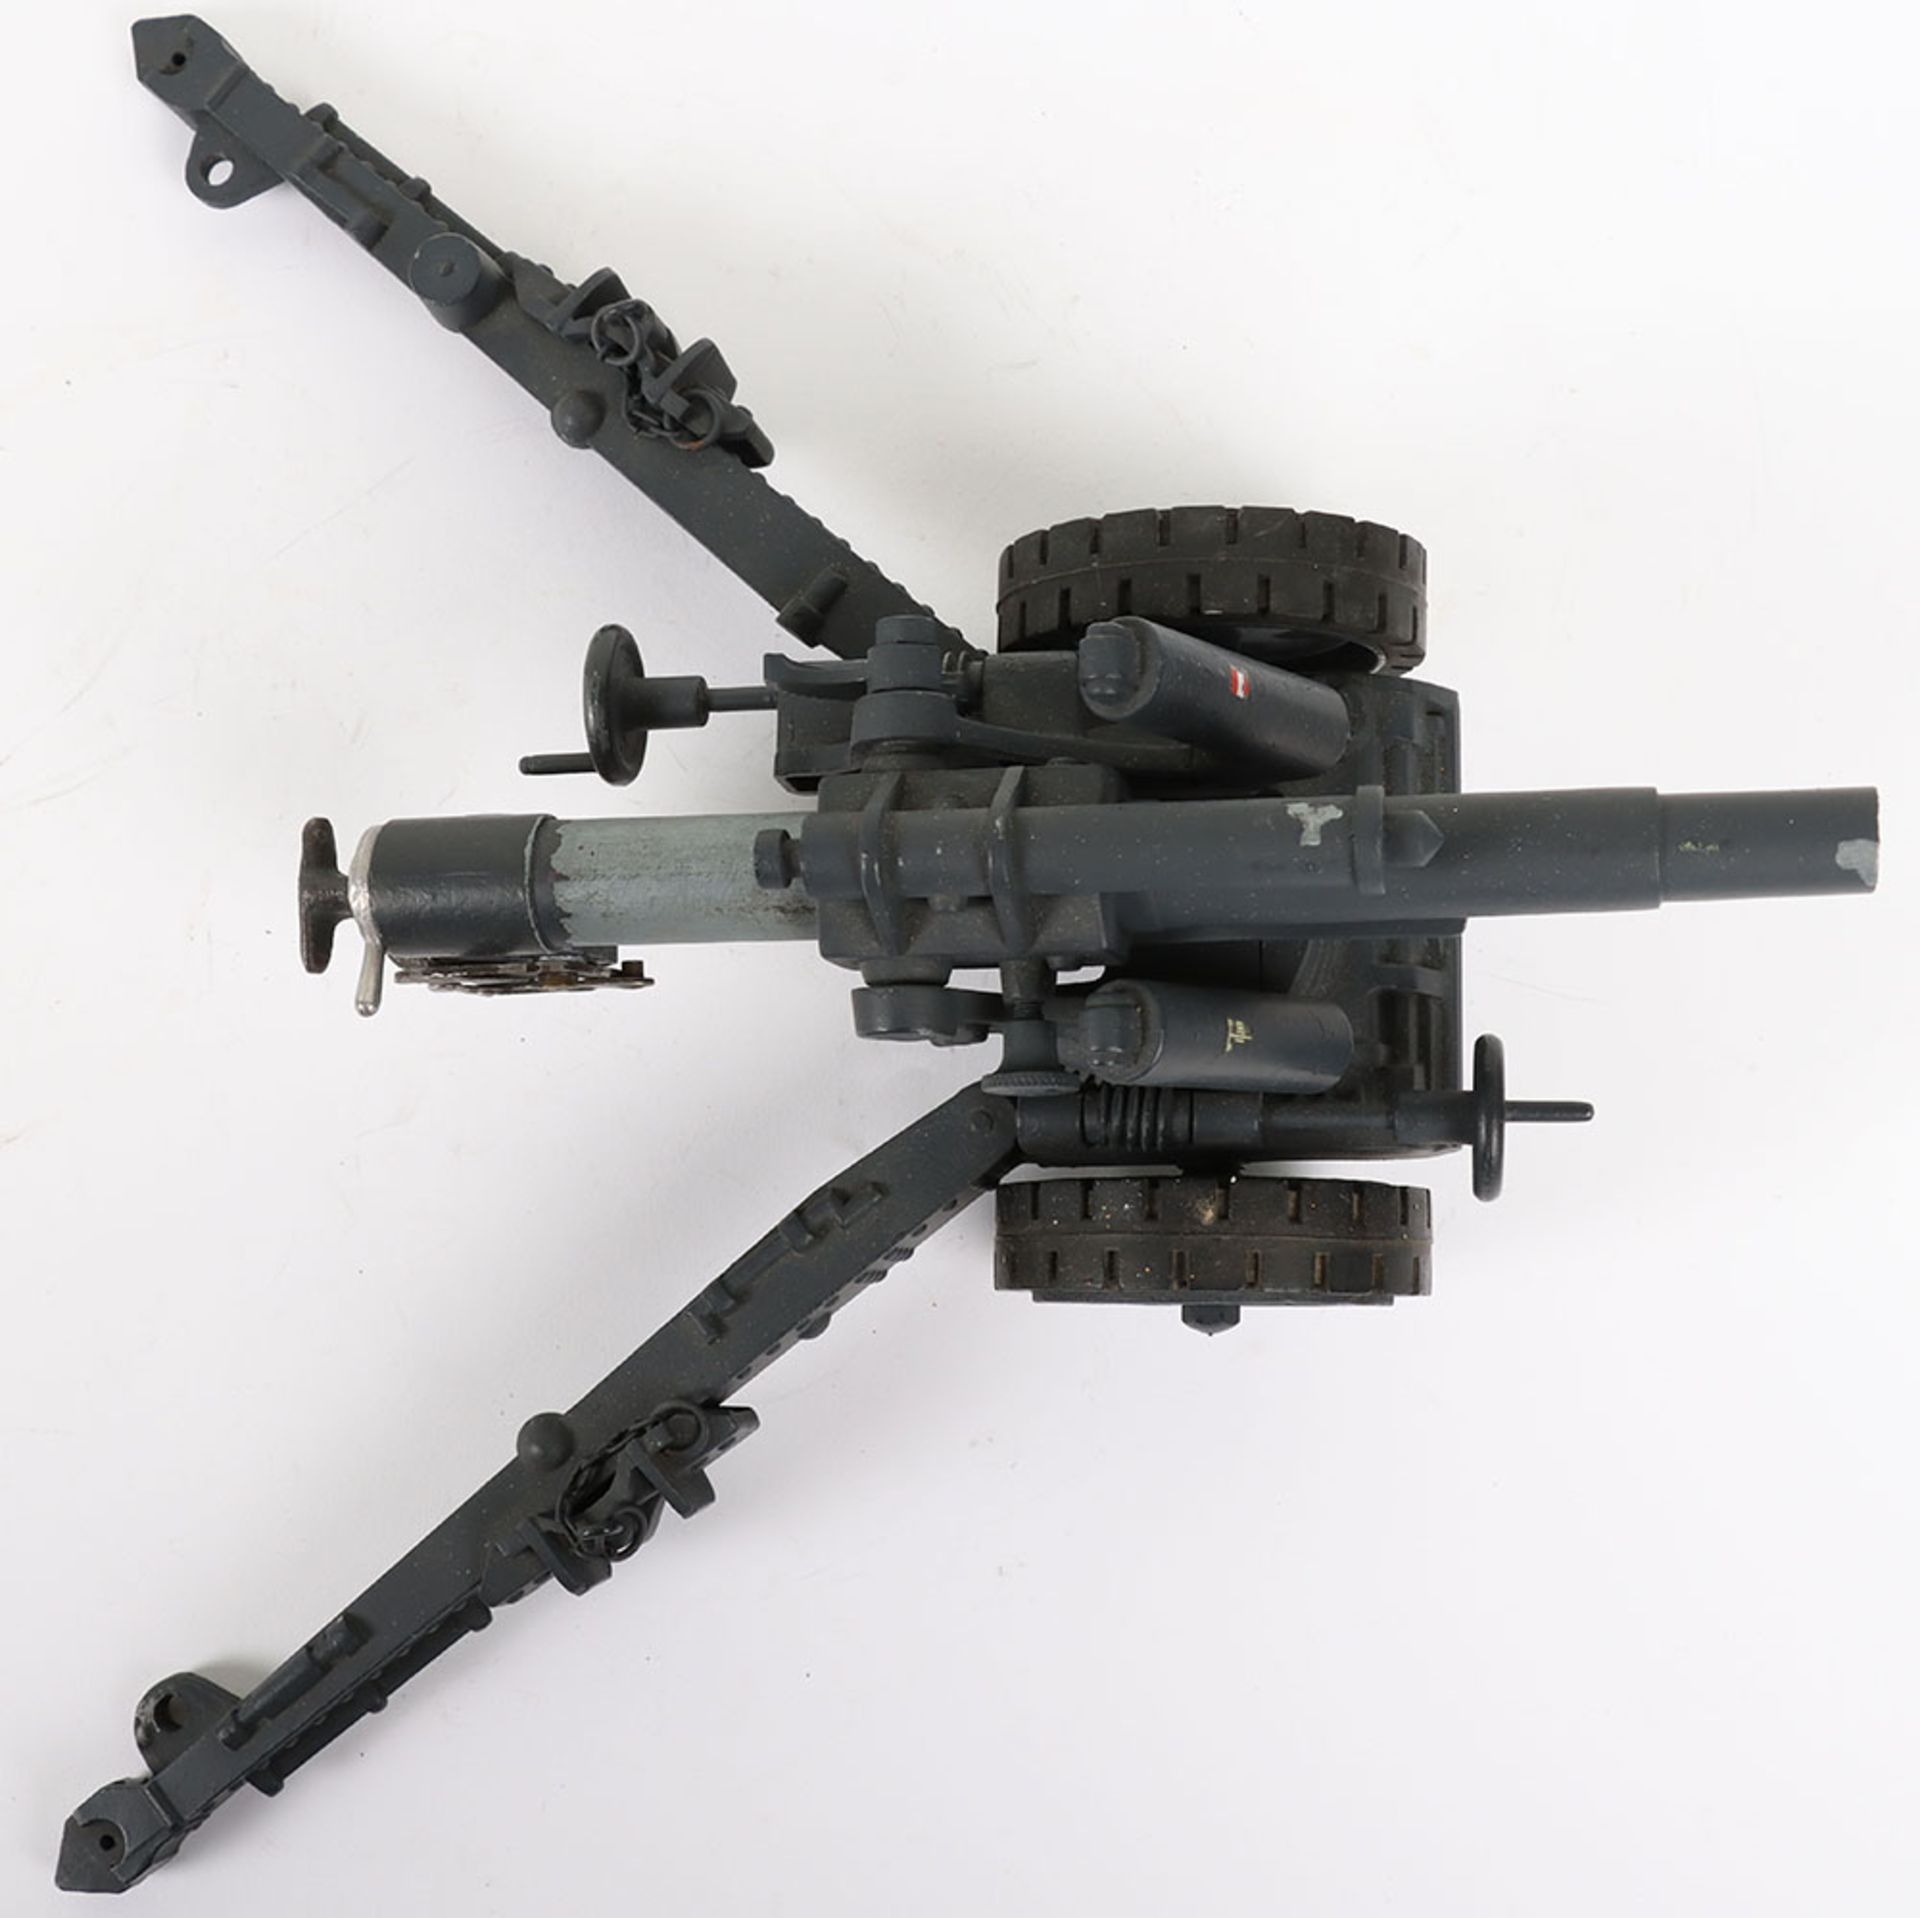 Modern Made Model of a WW2 German Artillery Field Gun - Image 7 of 9